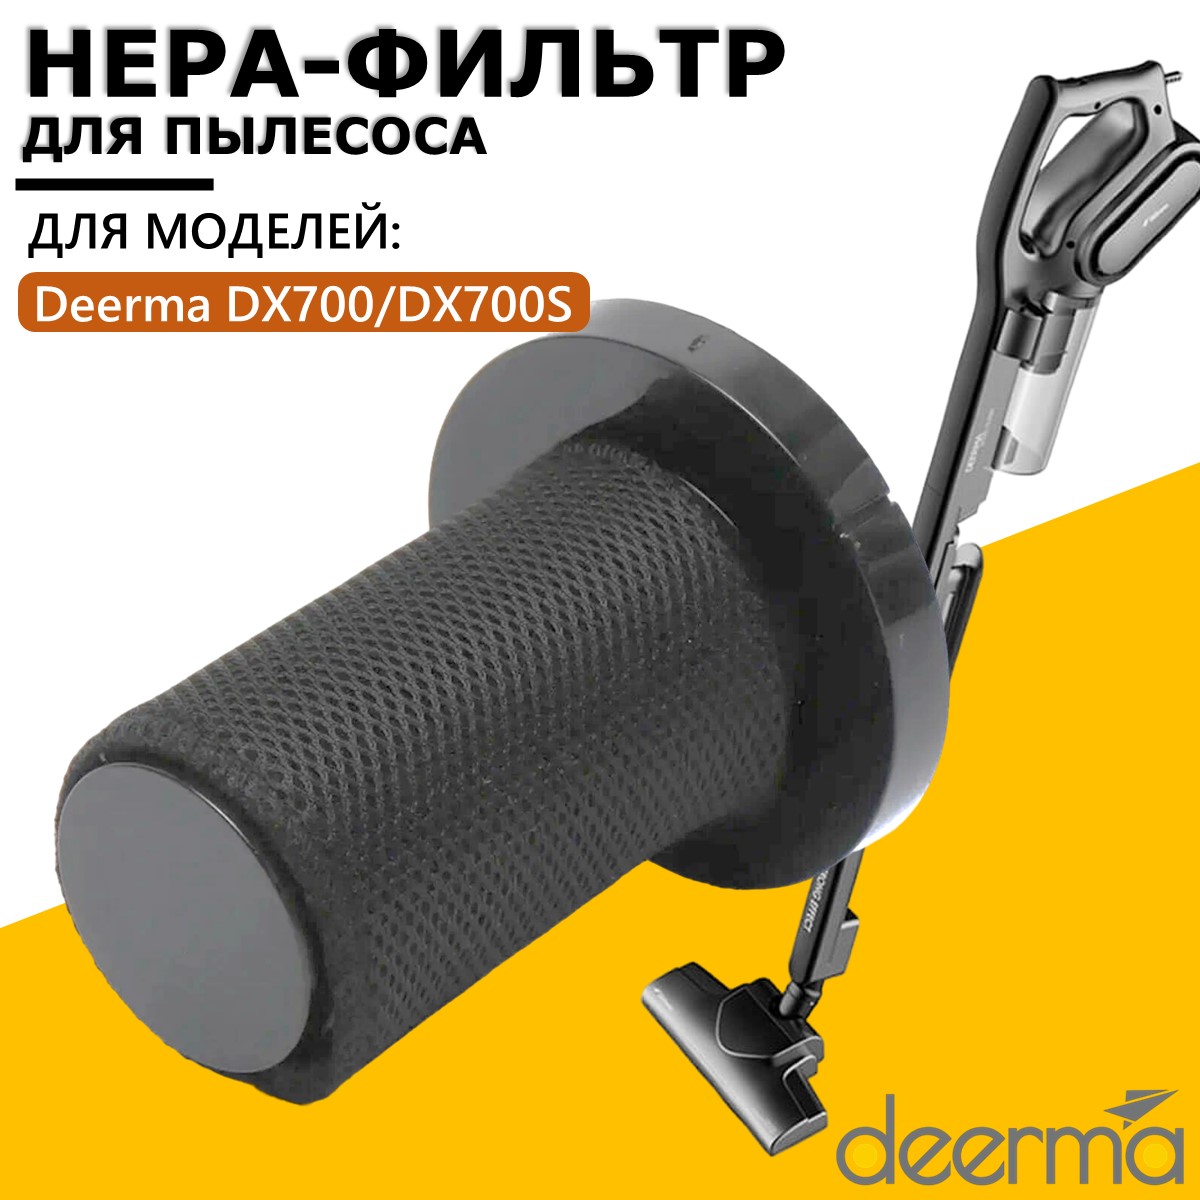 Фильтр Deerma DX700S 2шт фильтр с губкой крышки замена аксессуара для пылесоса deerma dx700 dx700s